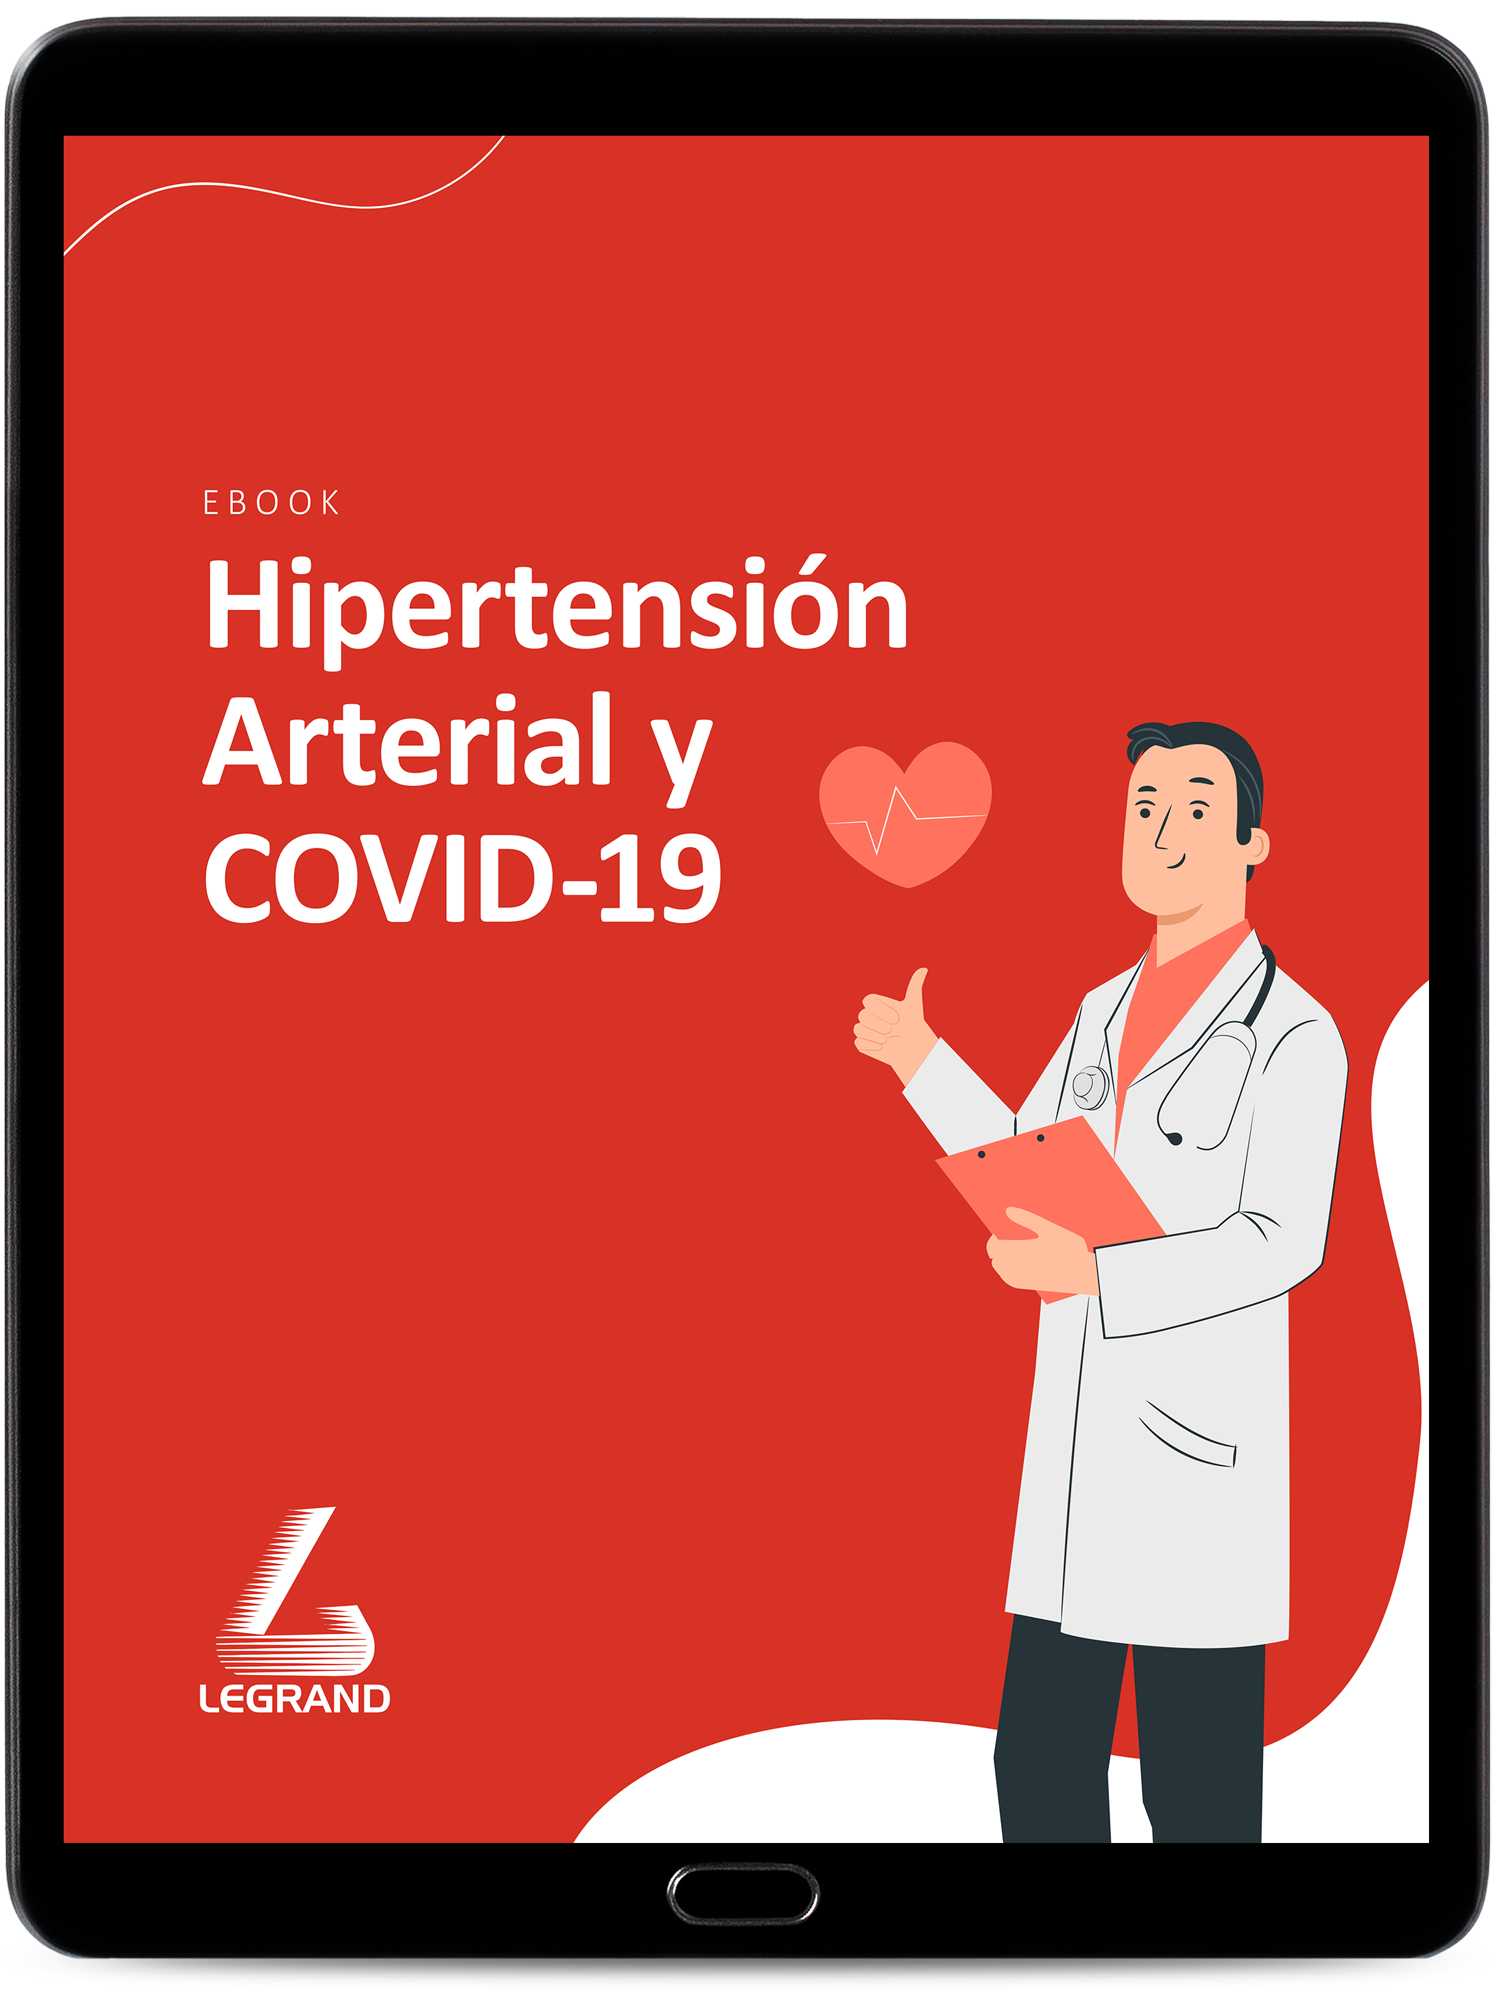 Legrand---Hipertensión-Arterial-y-COVID-19-1